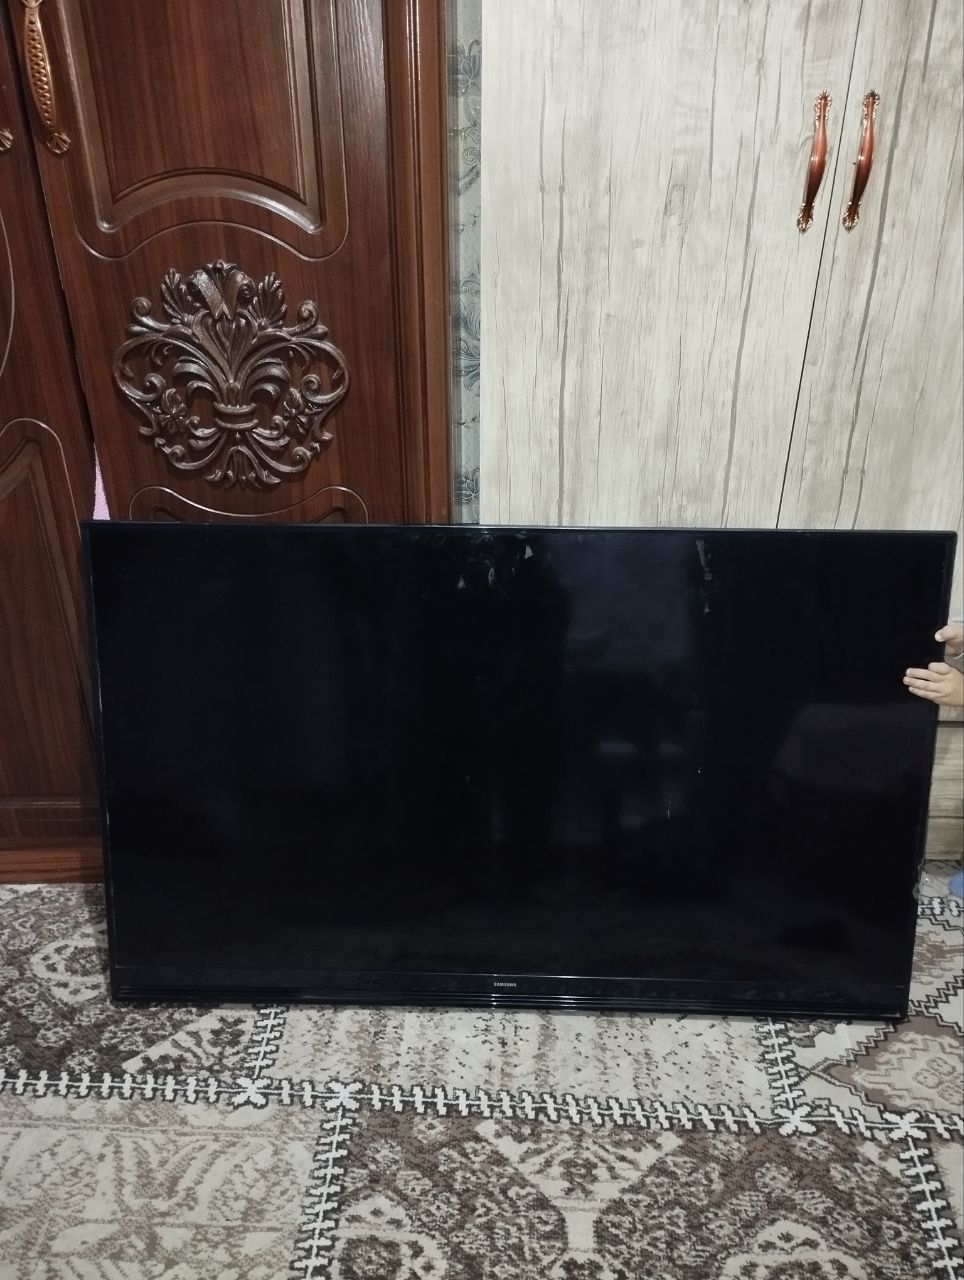 Samsung televizor 49 tali
Buzulgan tuzalmidi zapchaska sotiladi ekrand